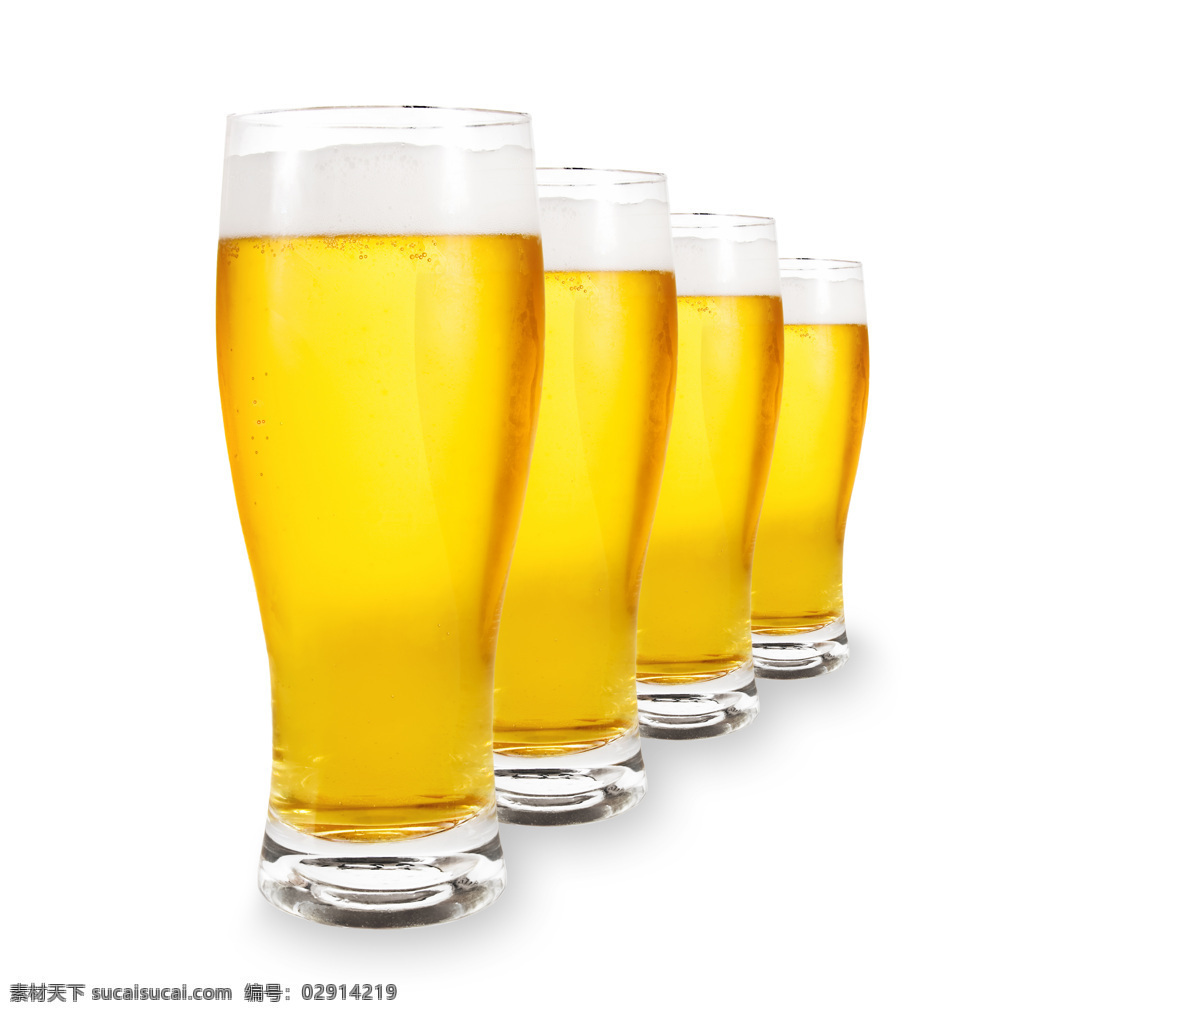 杯 啤酒 图 特写 酒水 饮料 泡沫 啤酒泡沫 扎啤 啤酒杯 啤酒广告 夏季饮料 餐饮 饮料酒水 餐饮美食 酒类图片